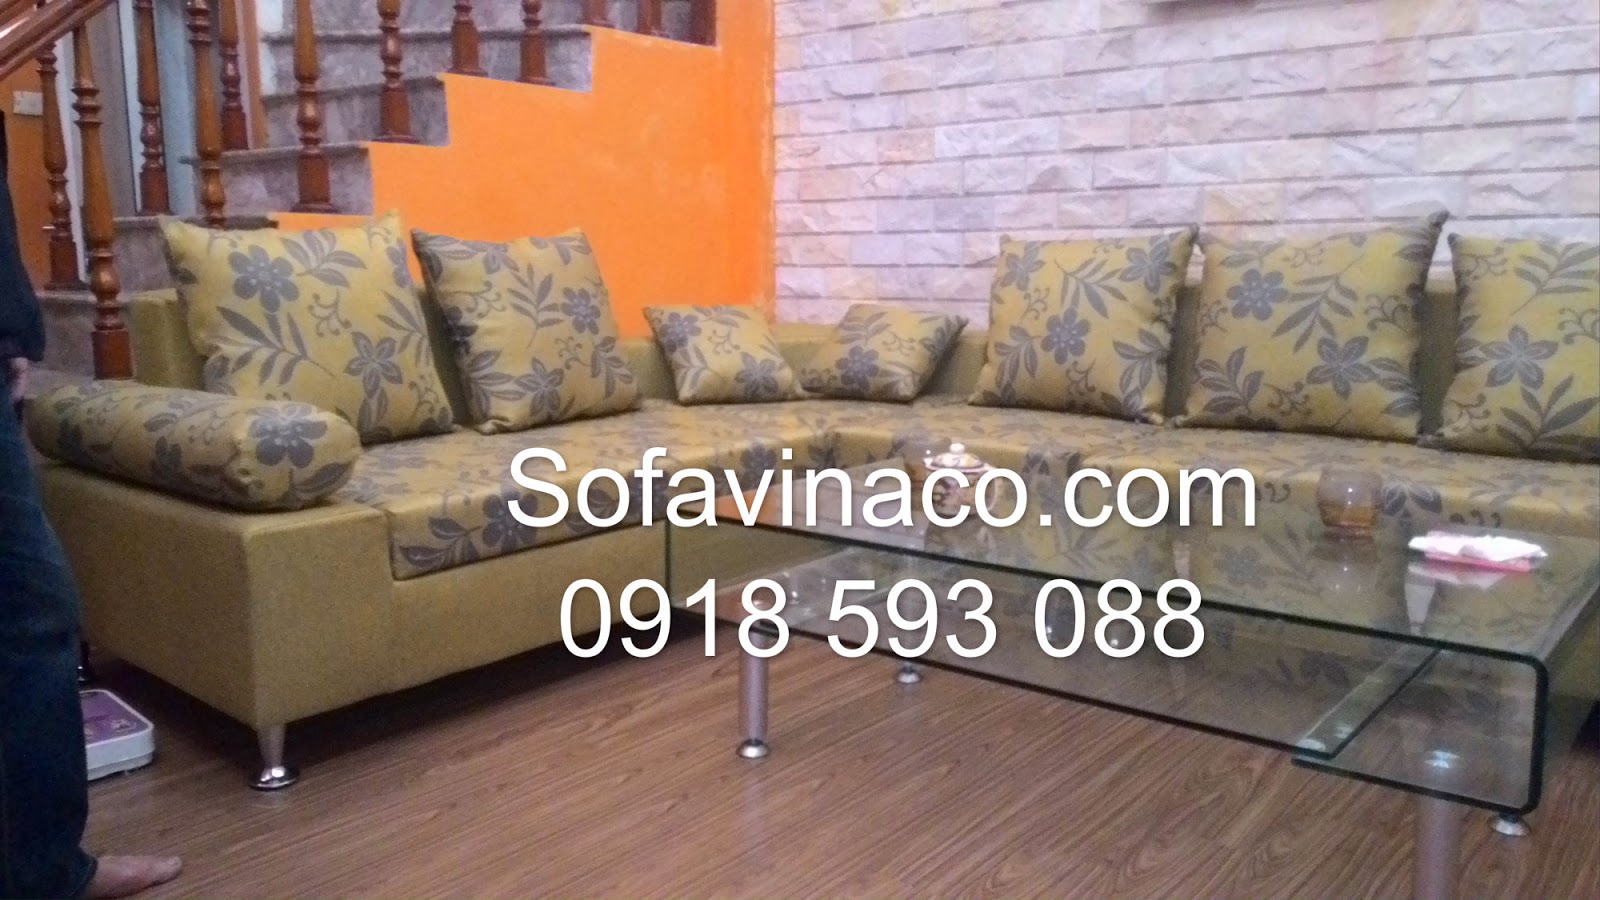 Công ty chuyên nhận bọc ghế sofa chuyên nghiệp tại Hà Nội